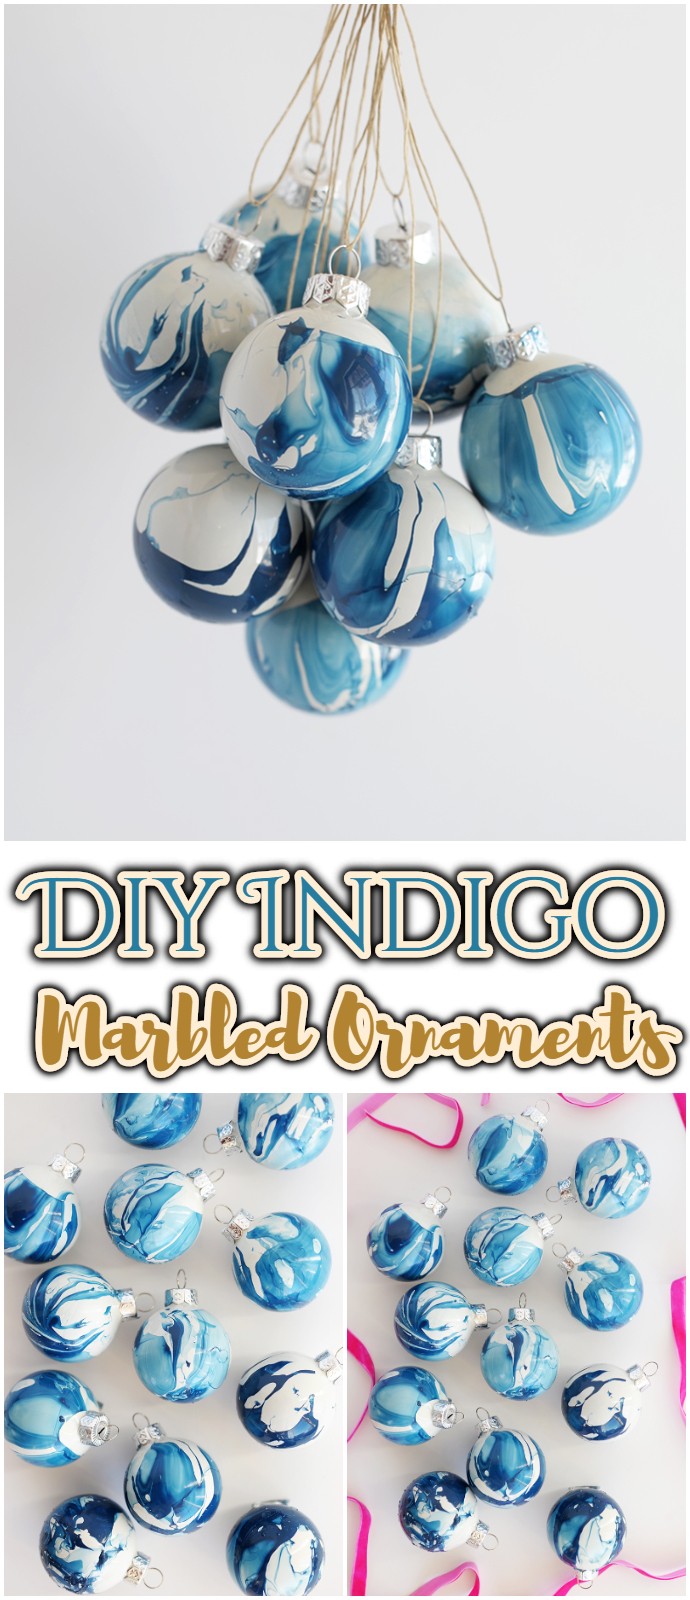 Diy Indigo Marbled Ornaments